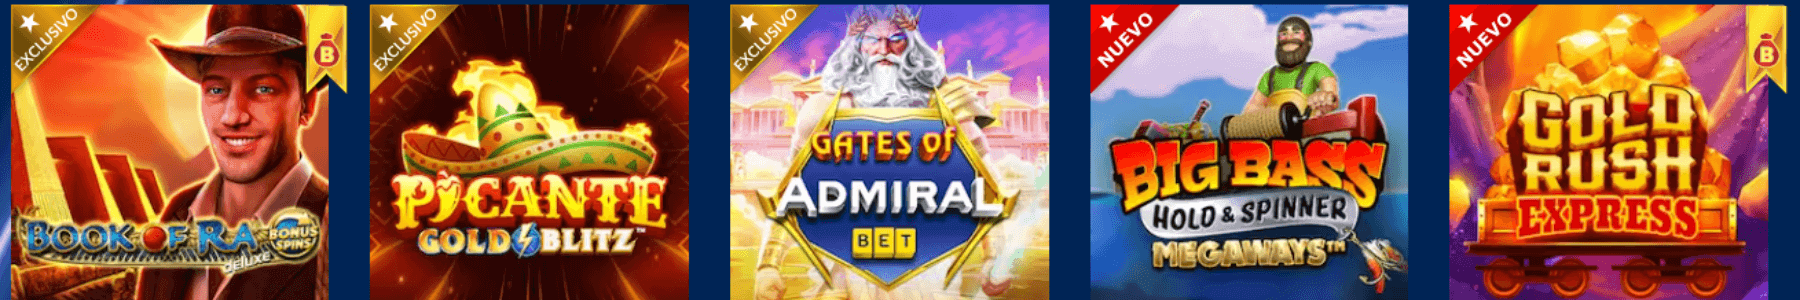 AdmiranBET juegos de casino